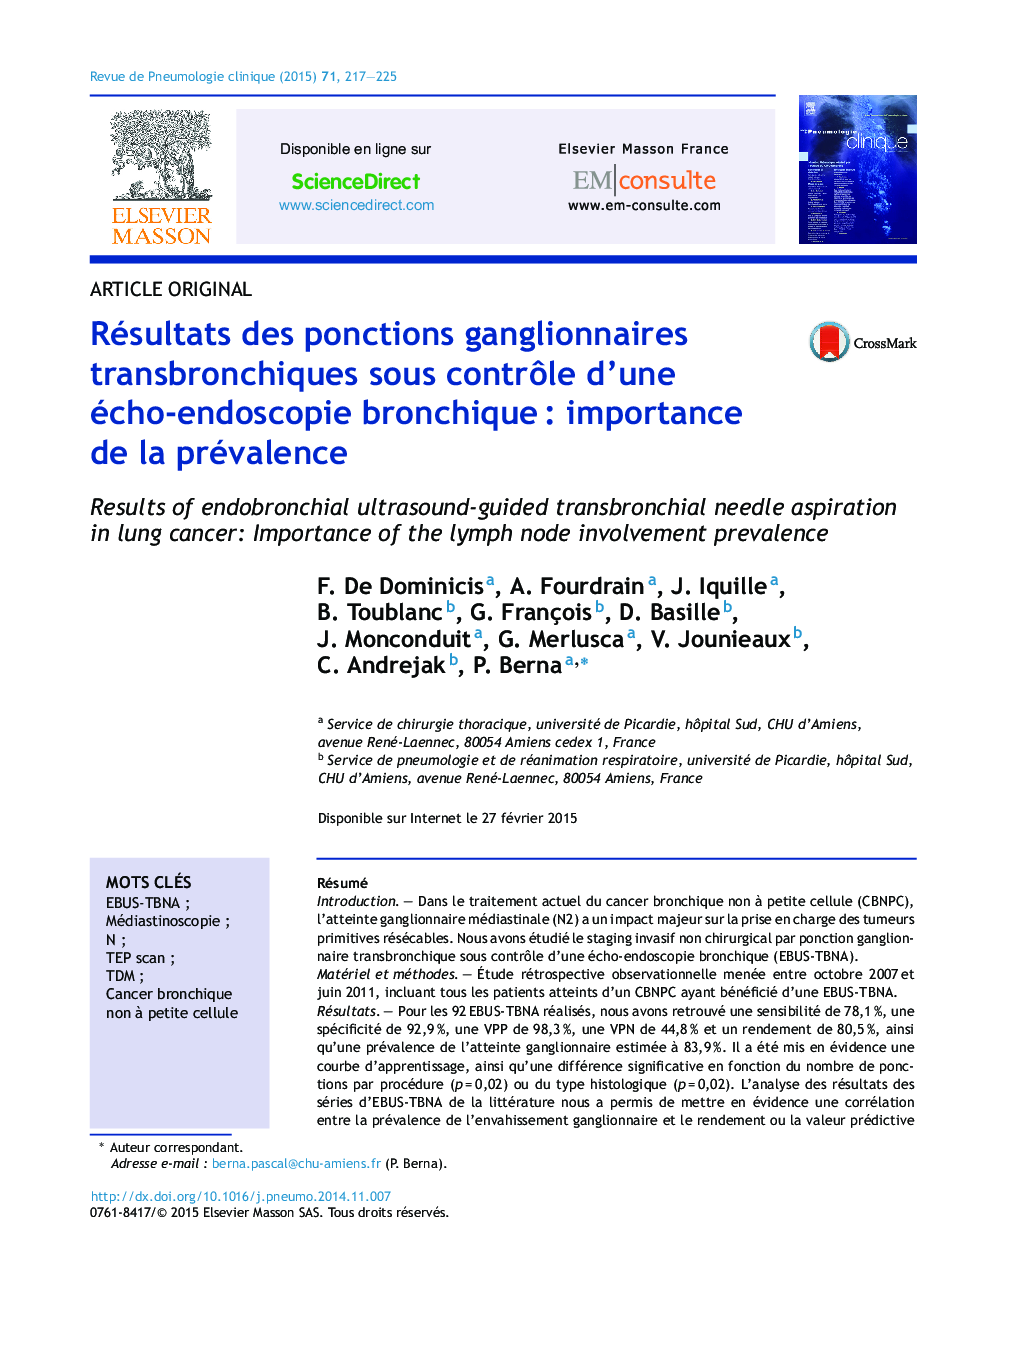 Résultats des ponctions ganglionnaires transbronchiques sous contrÃ´le d'une écho-endoscopie bronchiqueÂ : importance de la prévalence